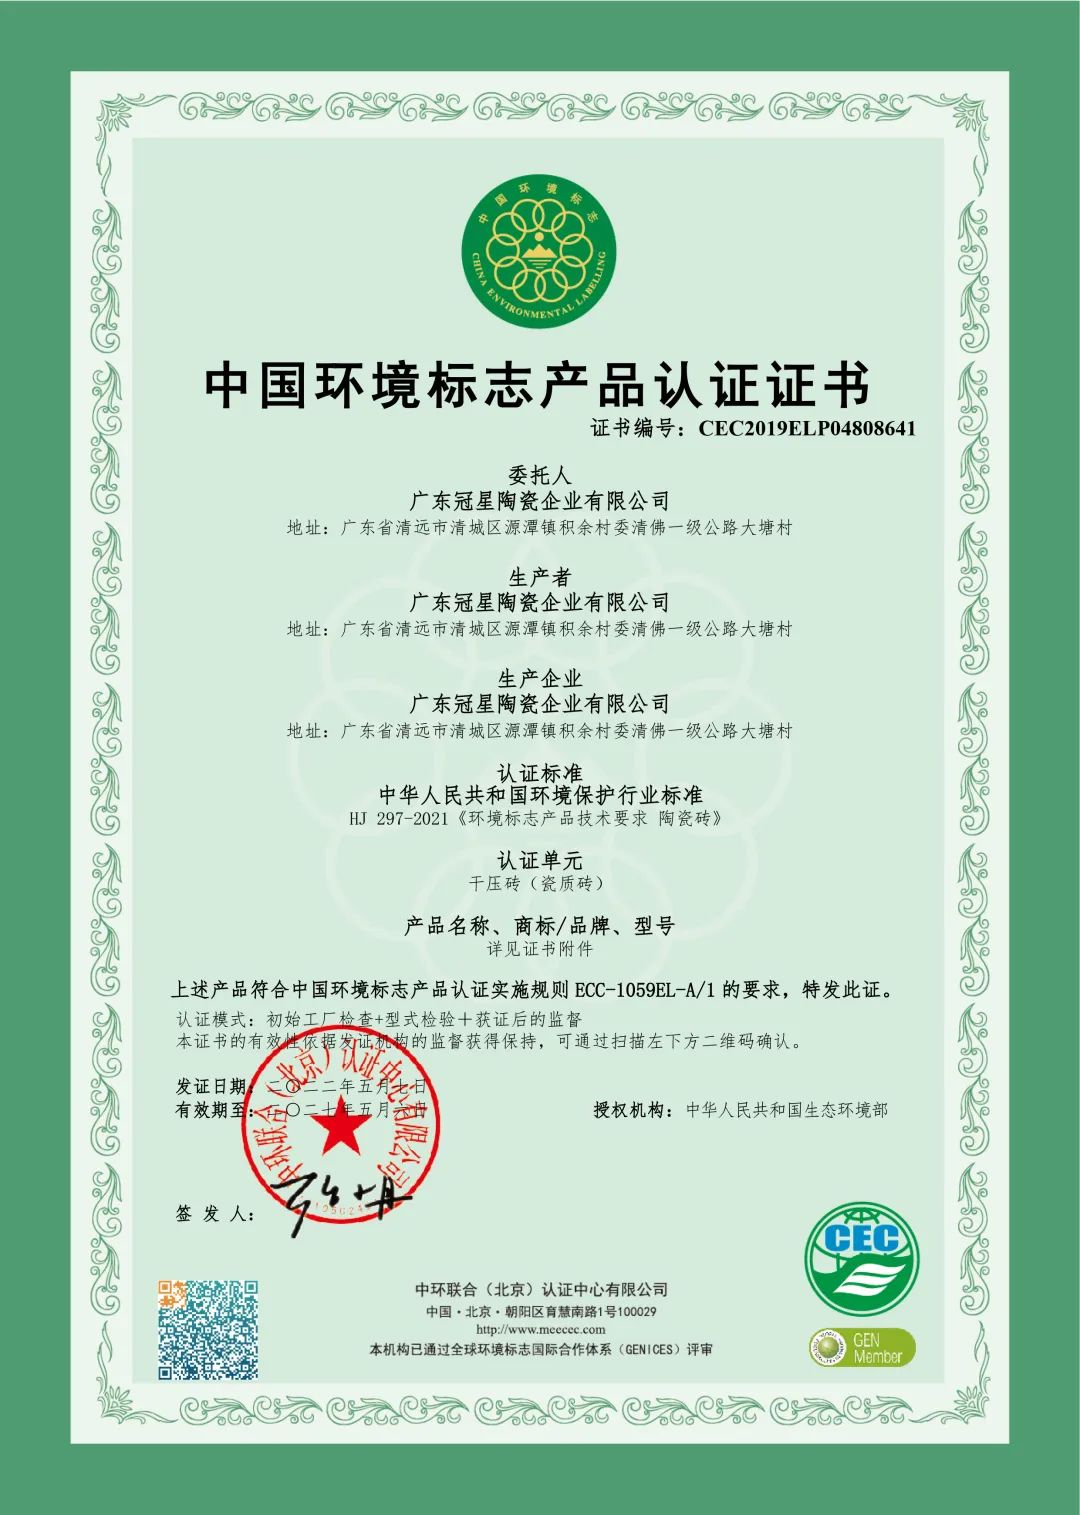 坚持绿色环保生产 美化全球人居环境 —— 冠星企业荣获《中国环境标志产品认证证书》